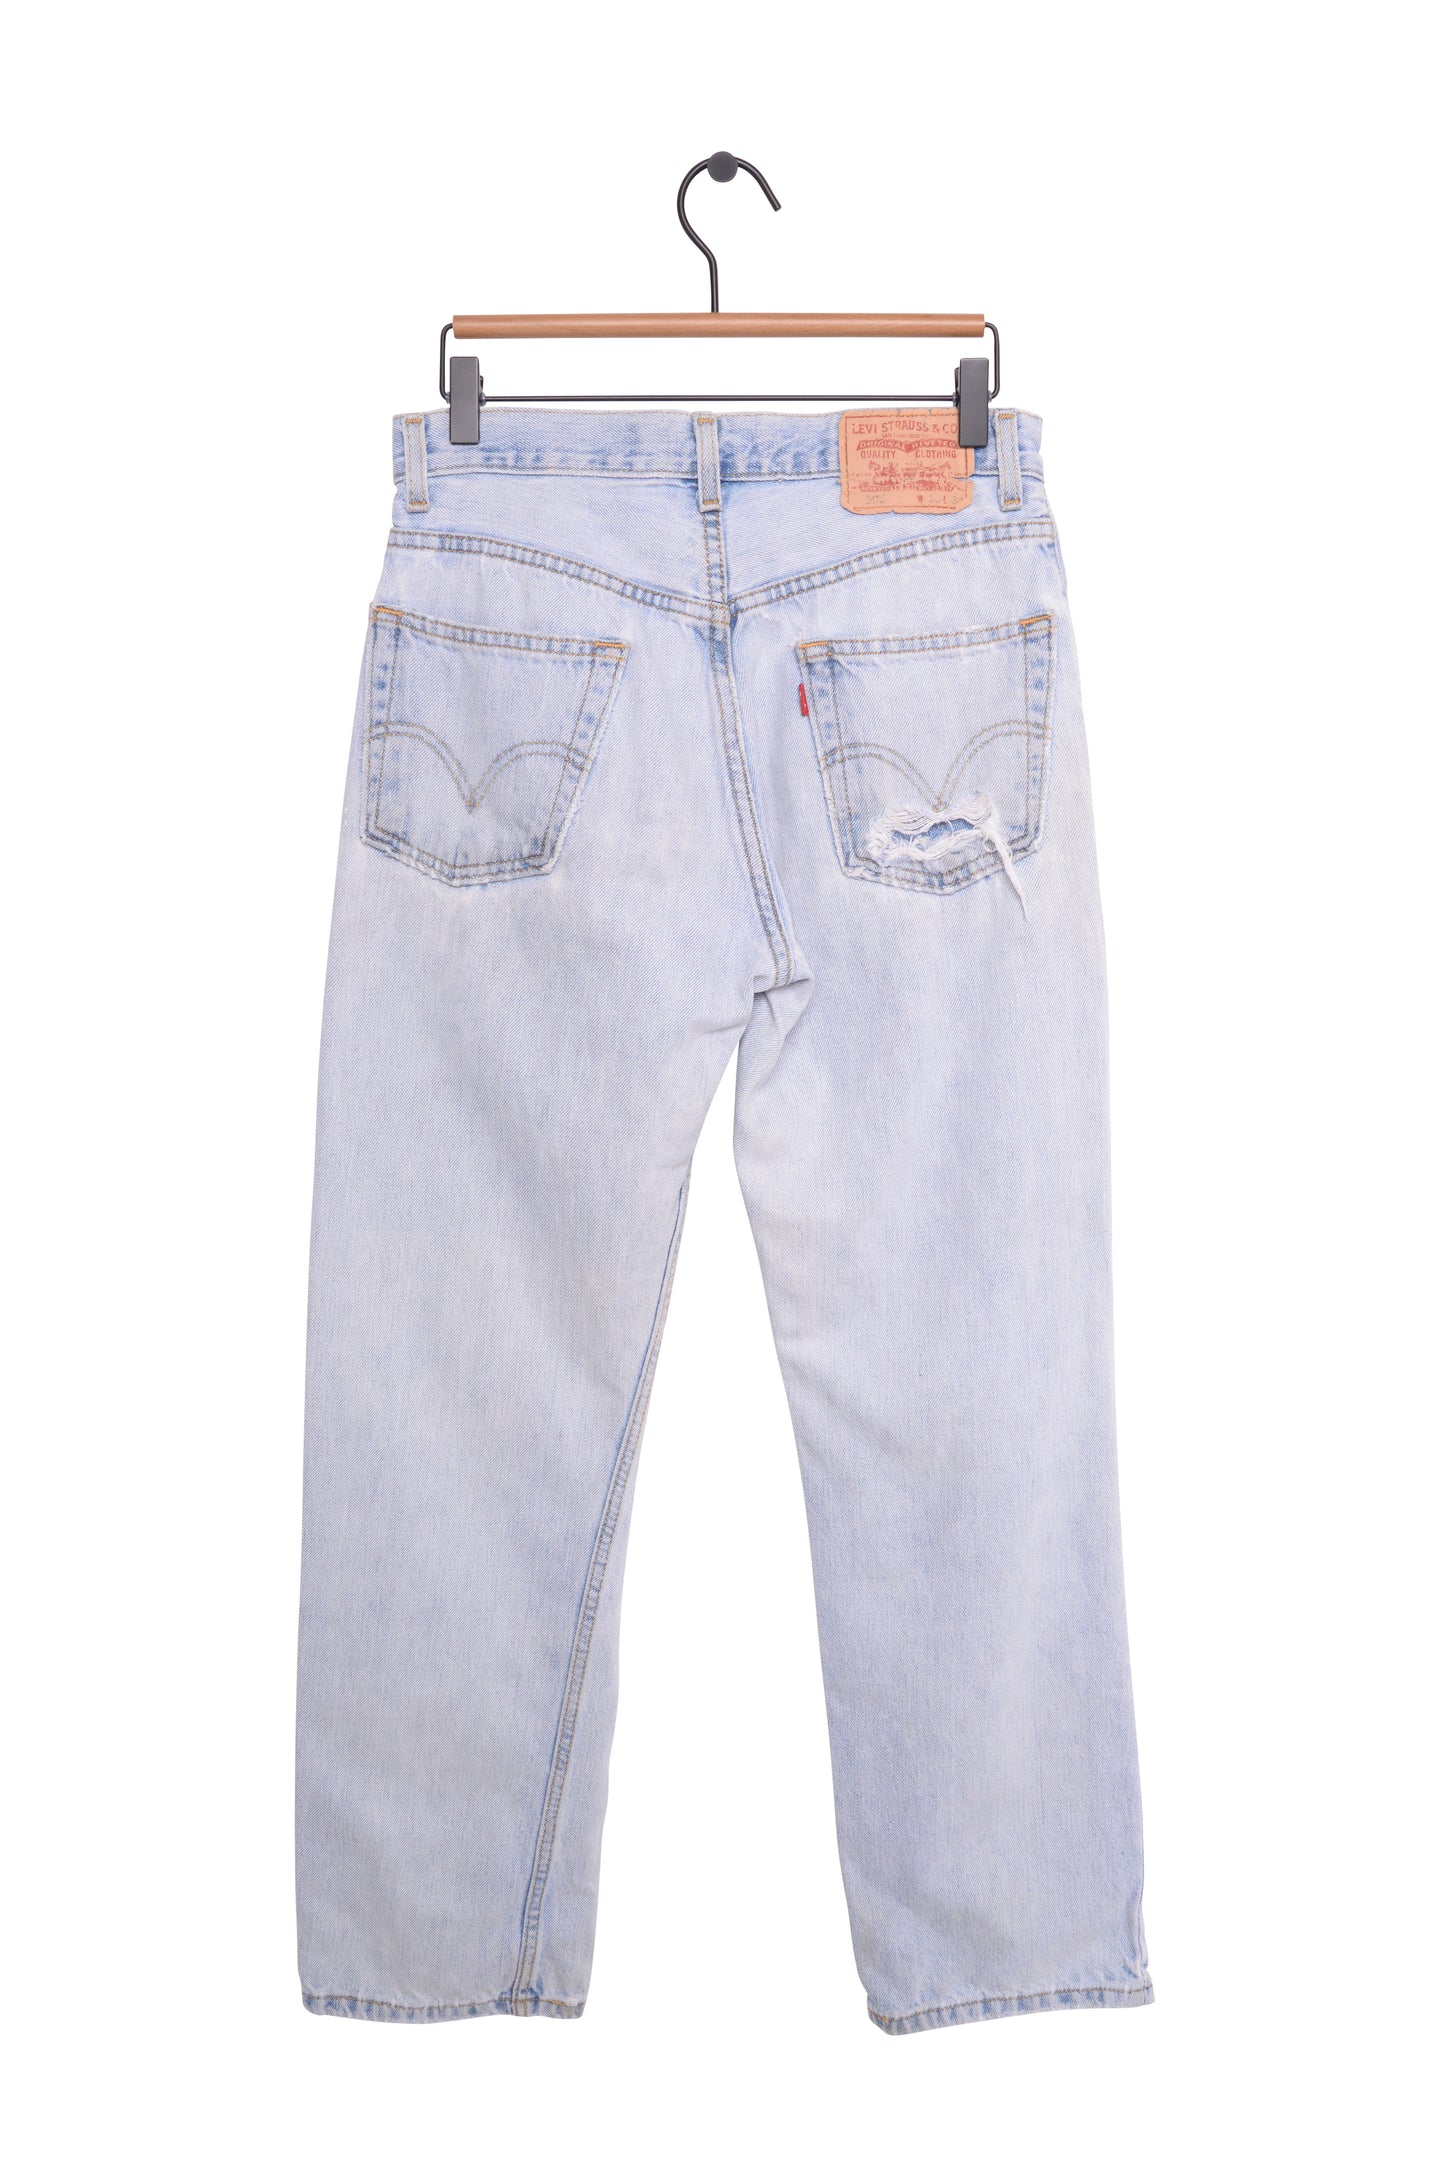 Faded Levi's Straight 505 Jeans 30W x 29L